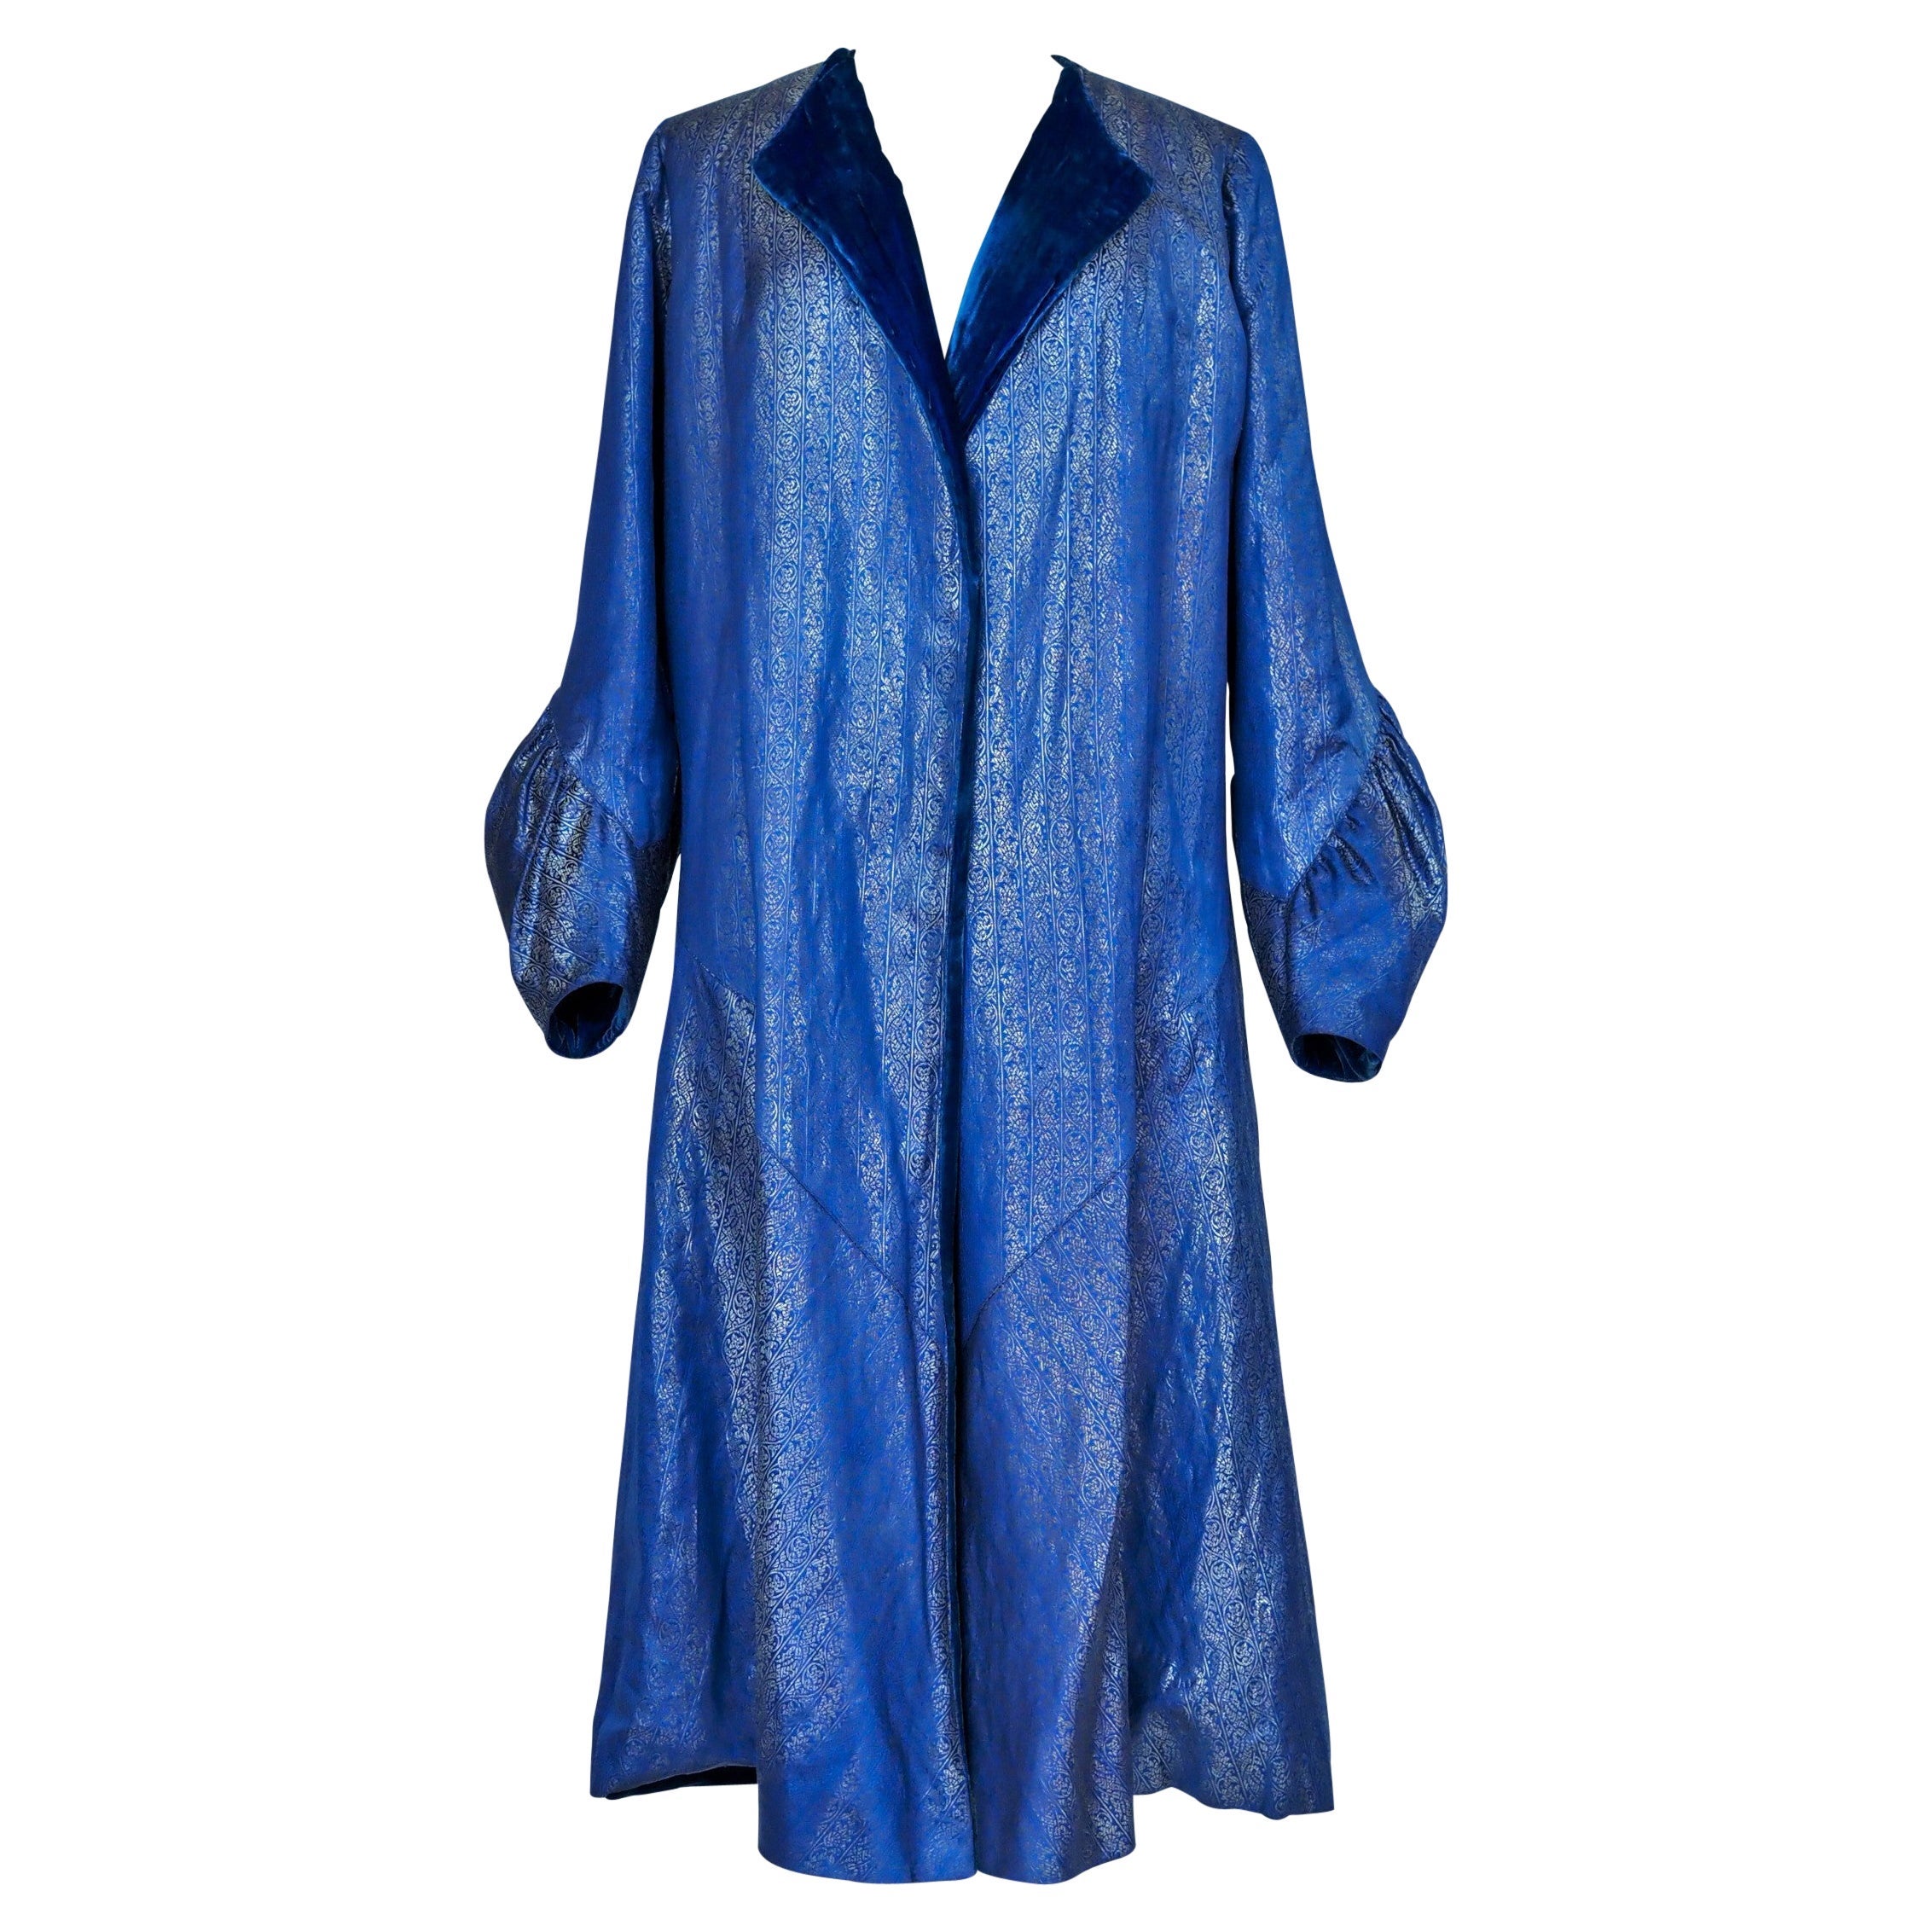 Abendlicher Couture-Mantel aus Silberlamé von Germaine Lecomte N°03871 Paris CIRCA 1930